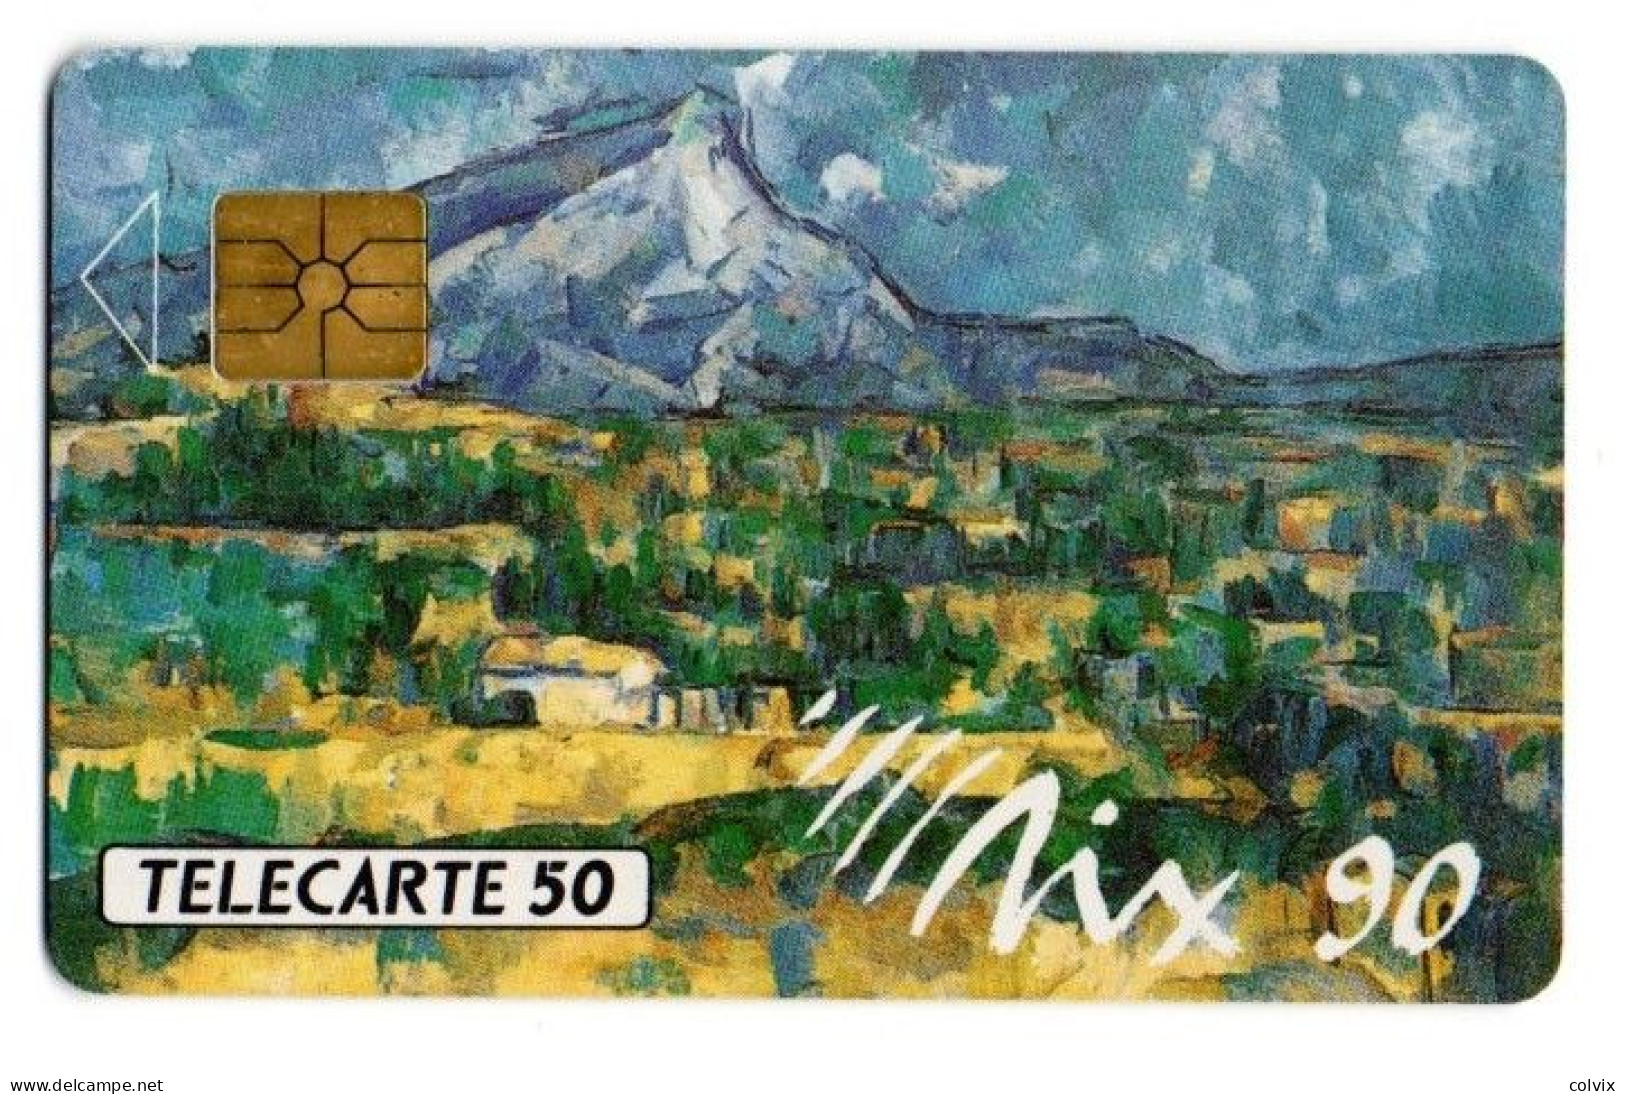 FRANCE TELECARTE D420A AIX90 50U 1000 Ex Date12/1990 Paul Cézanne La Montagne Sainte Victoire - Privat